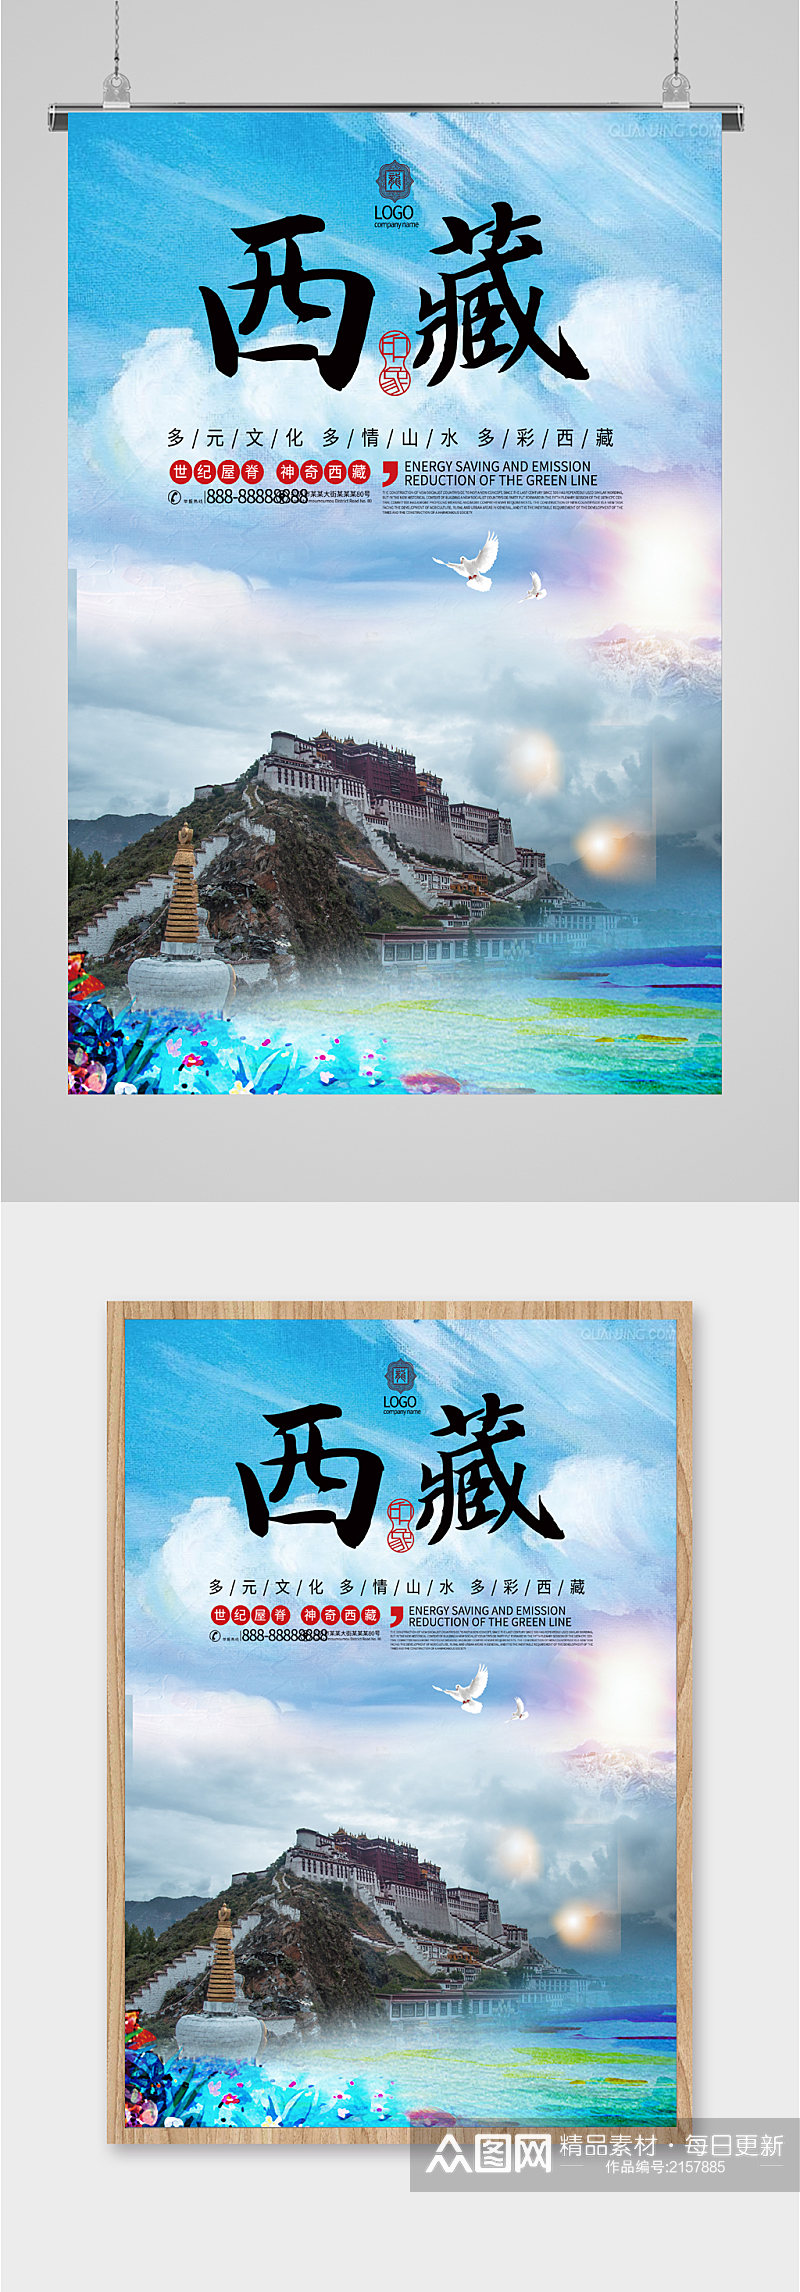 西藏出行旅游海报素材